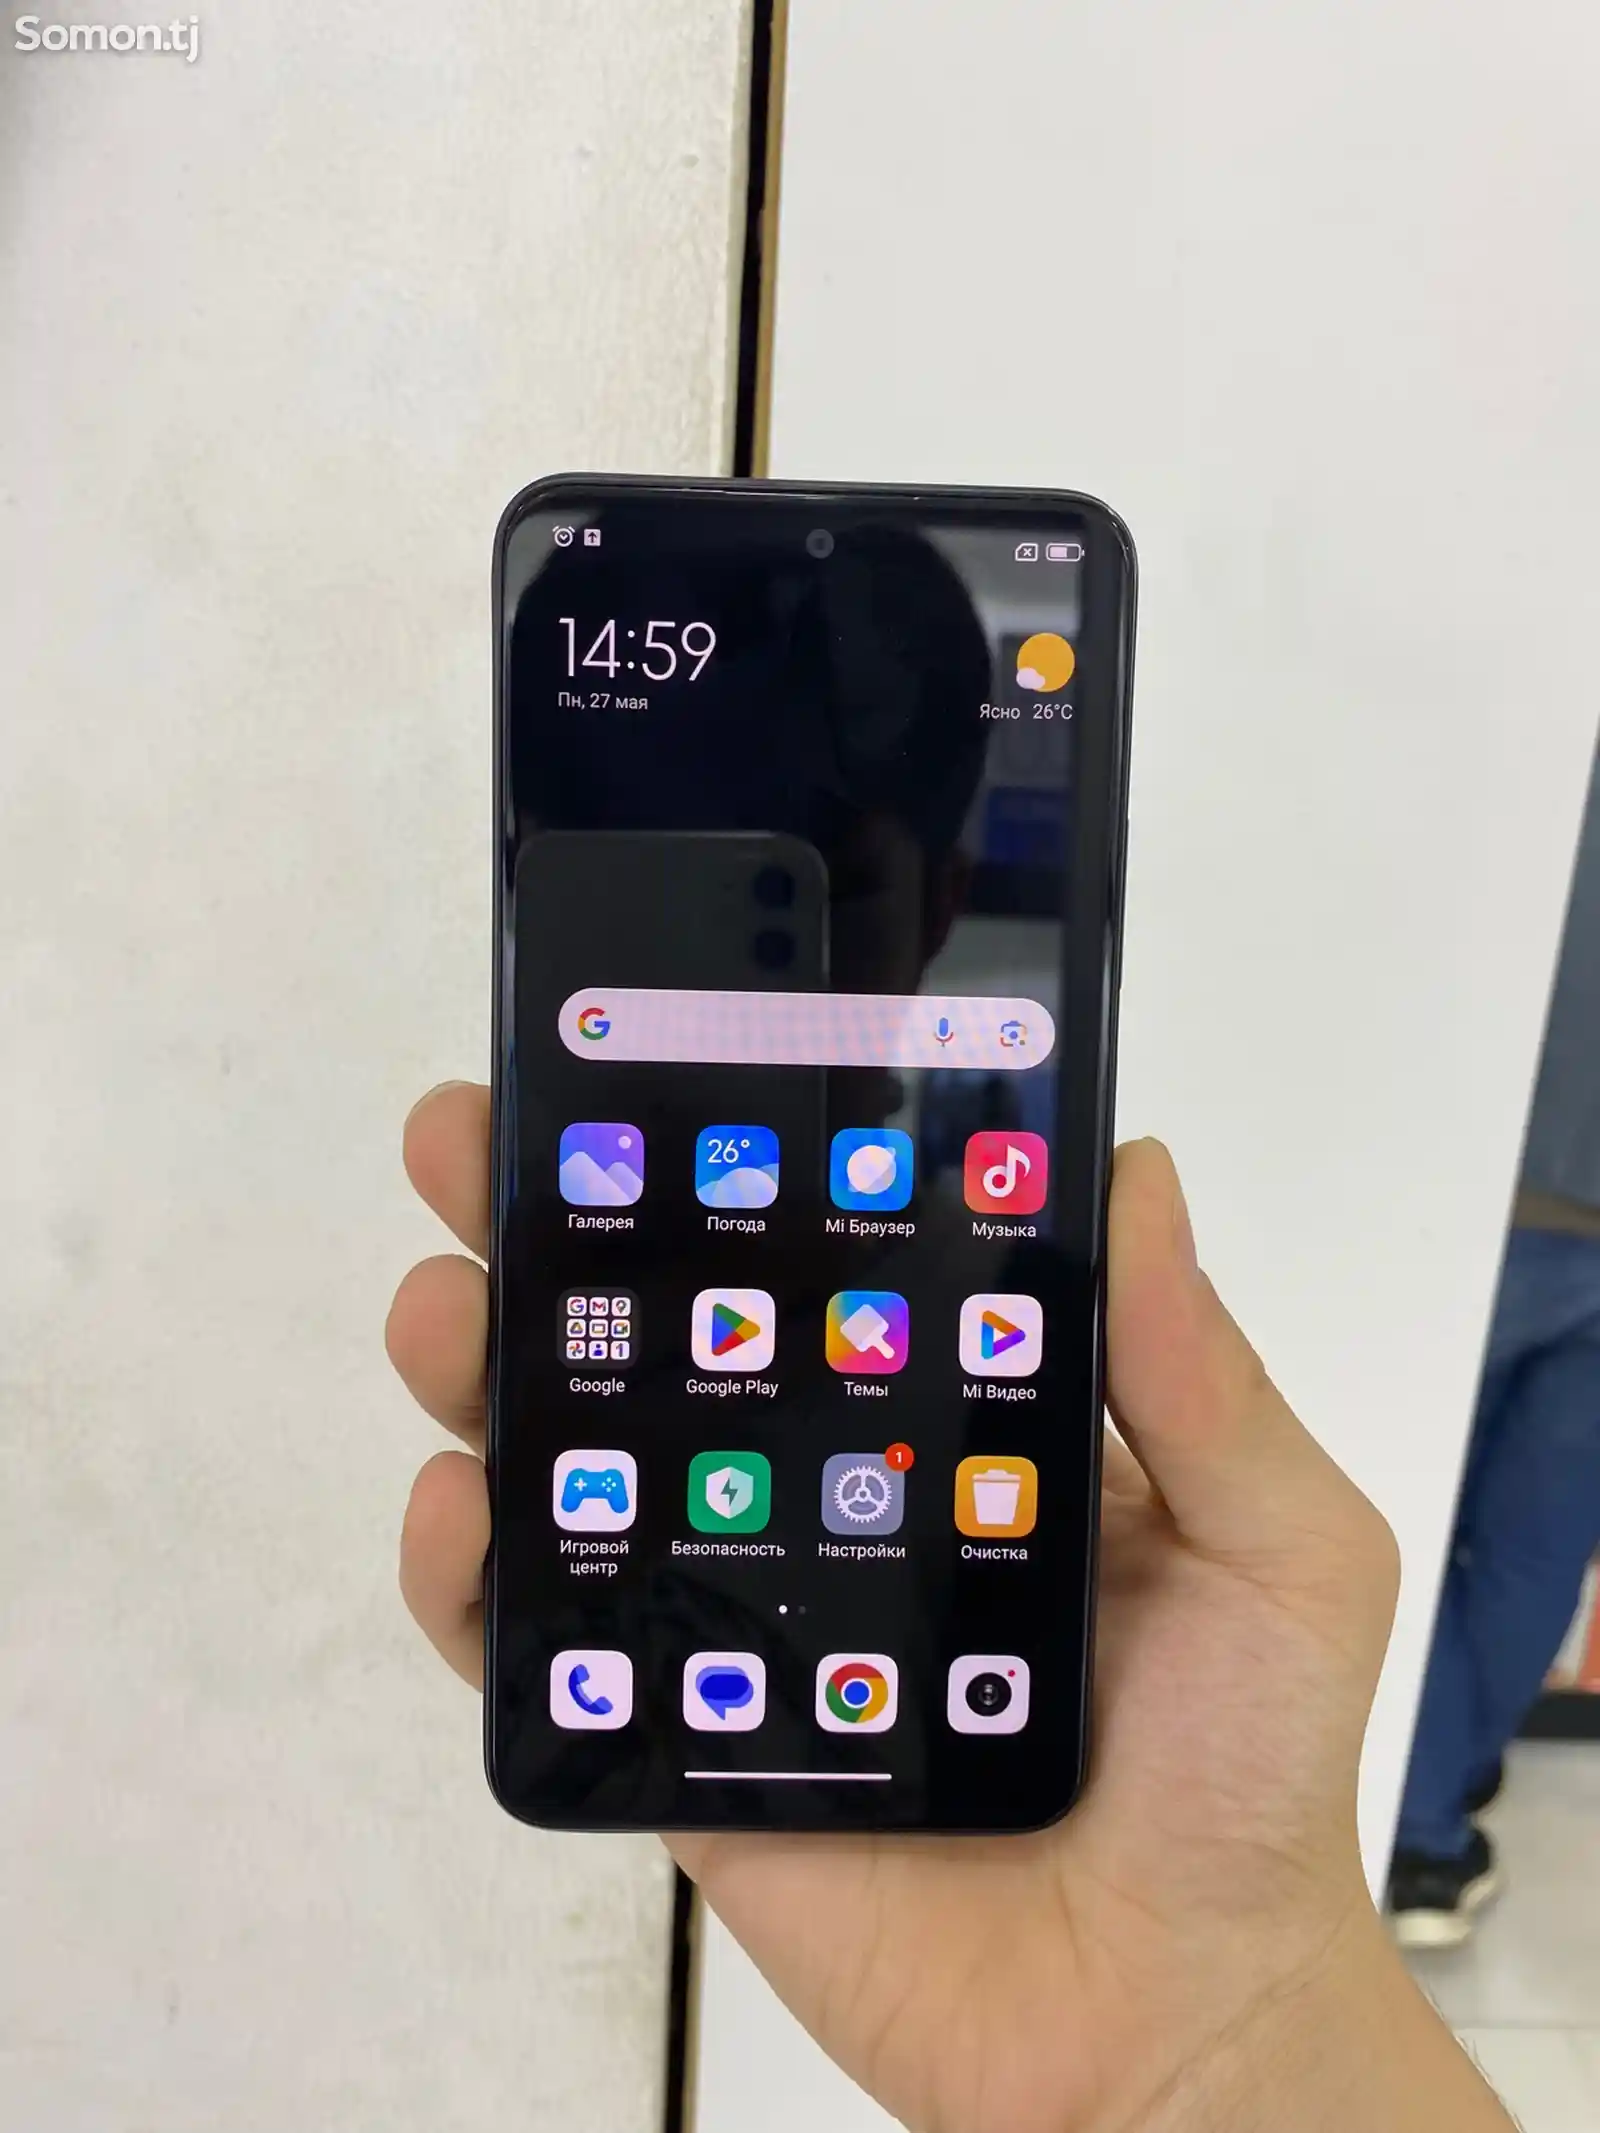 Xiaomi Redmi Note 12-3